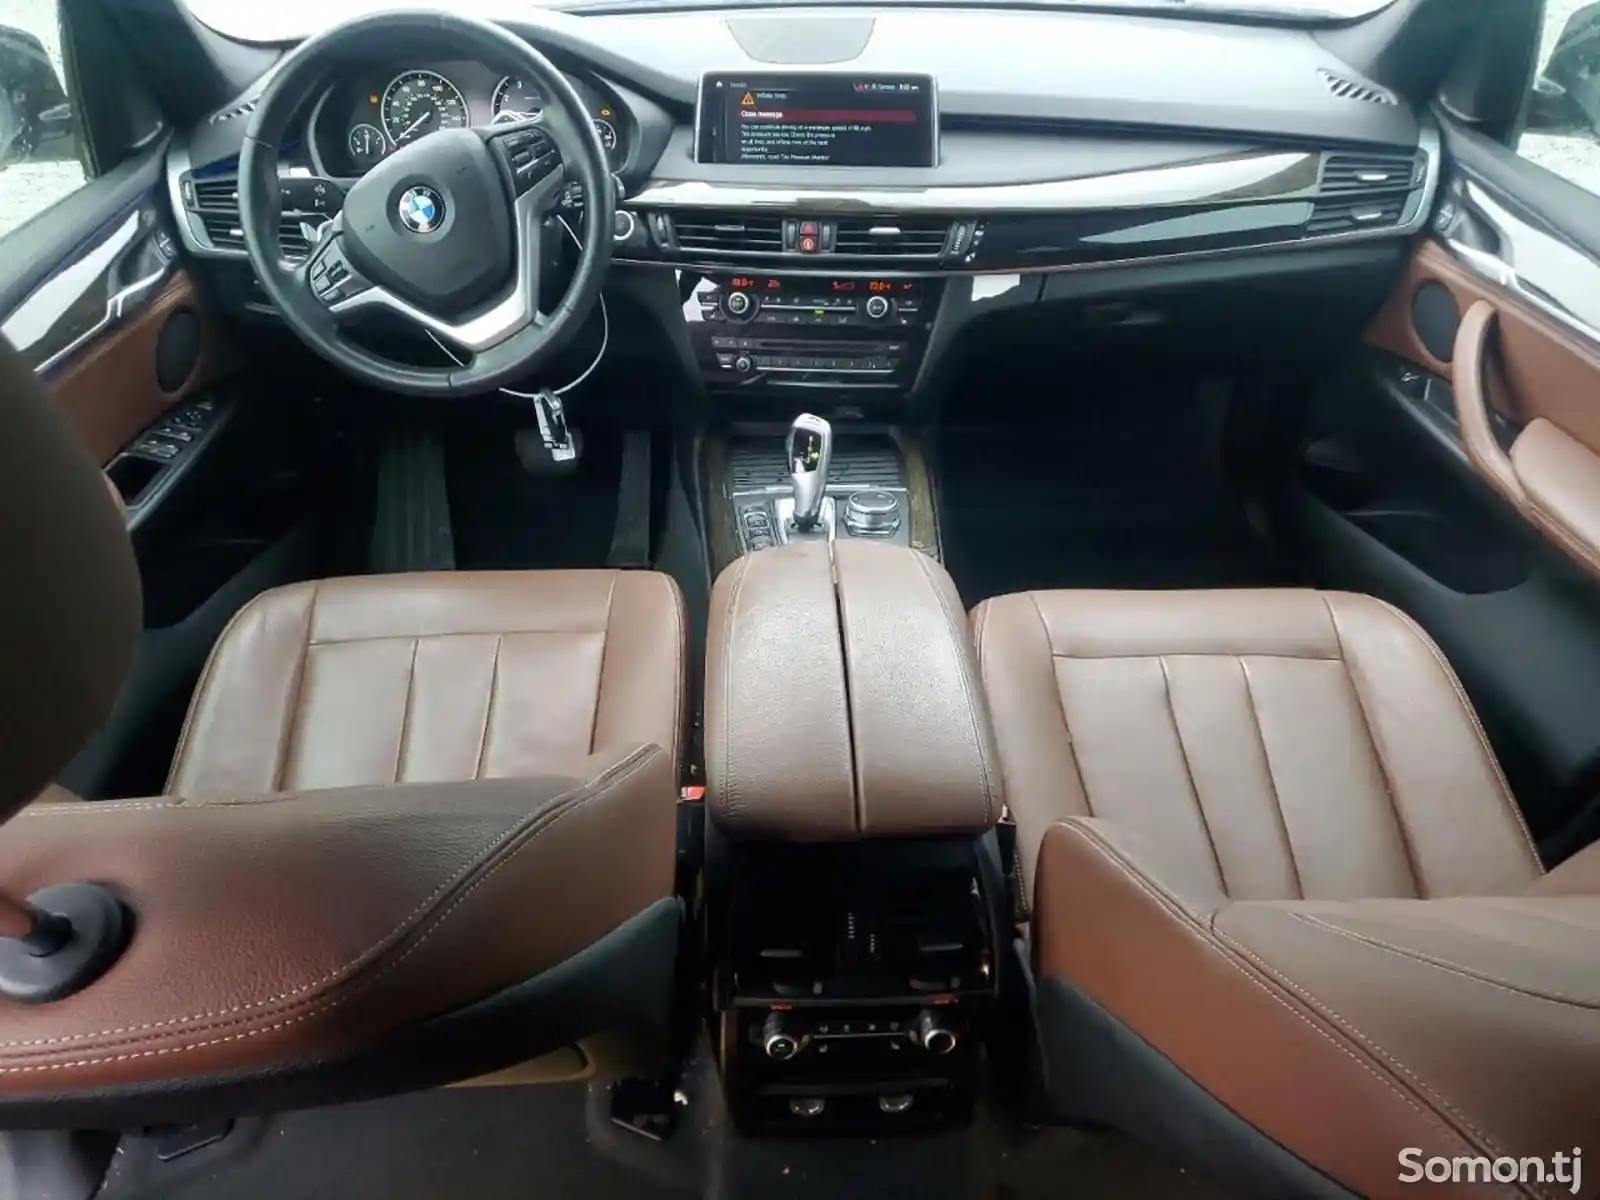 BMW X5, 2018-2